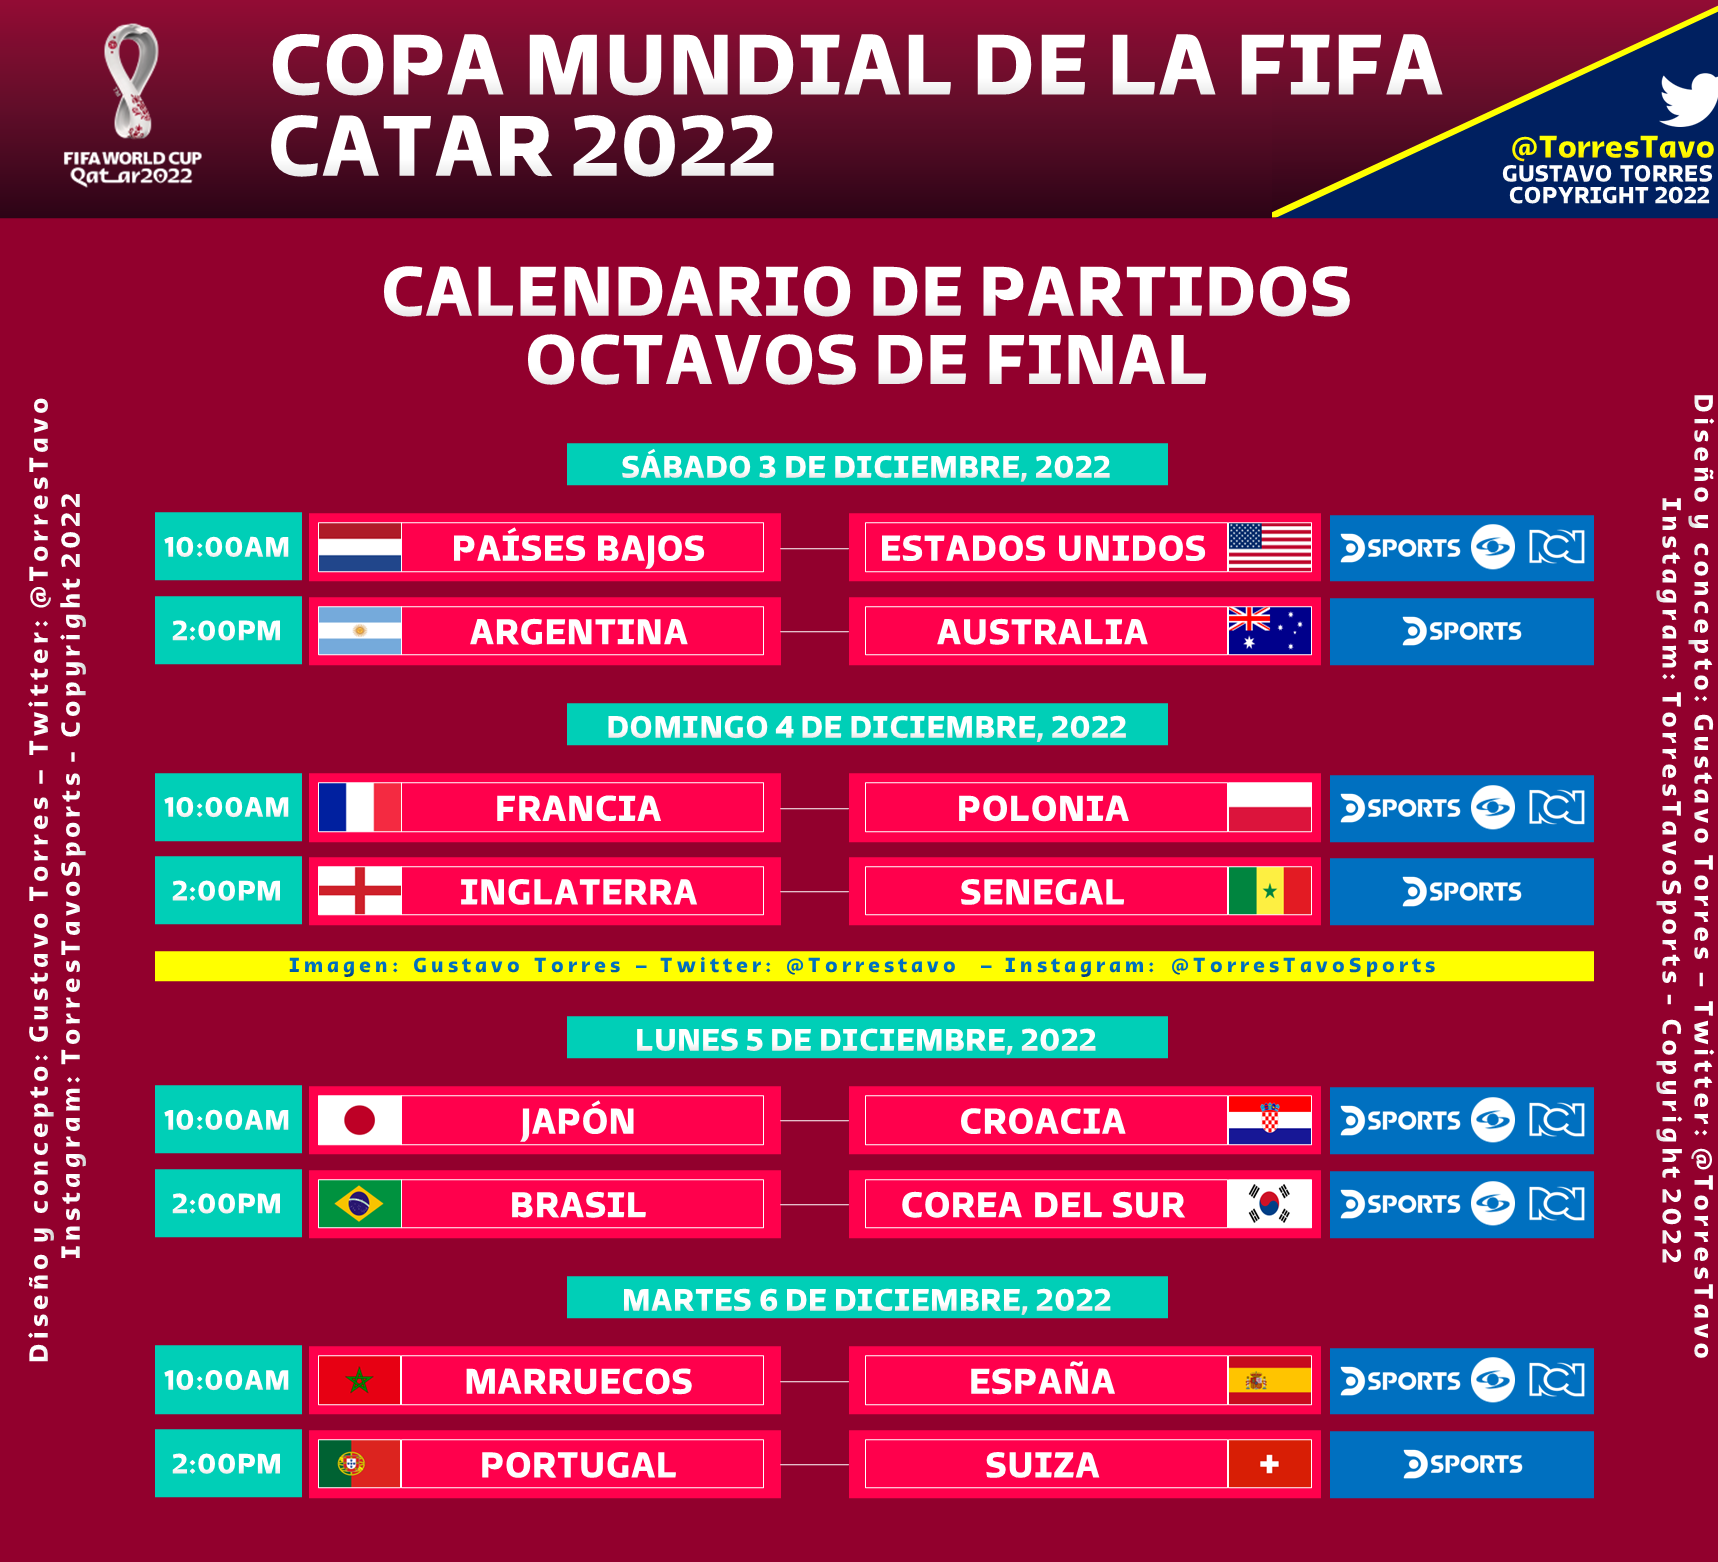 Gustavo Torres on Twitter: "#FIFAWorldCup #Qatar2022 ¡Todo definido! son los partidos de octavos de final, con fecha, horarios y canales emiten encuentro. En esta fase, en el caso de